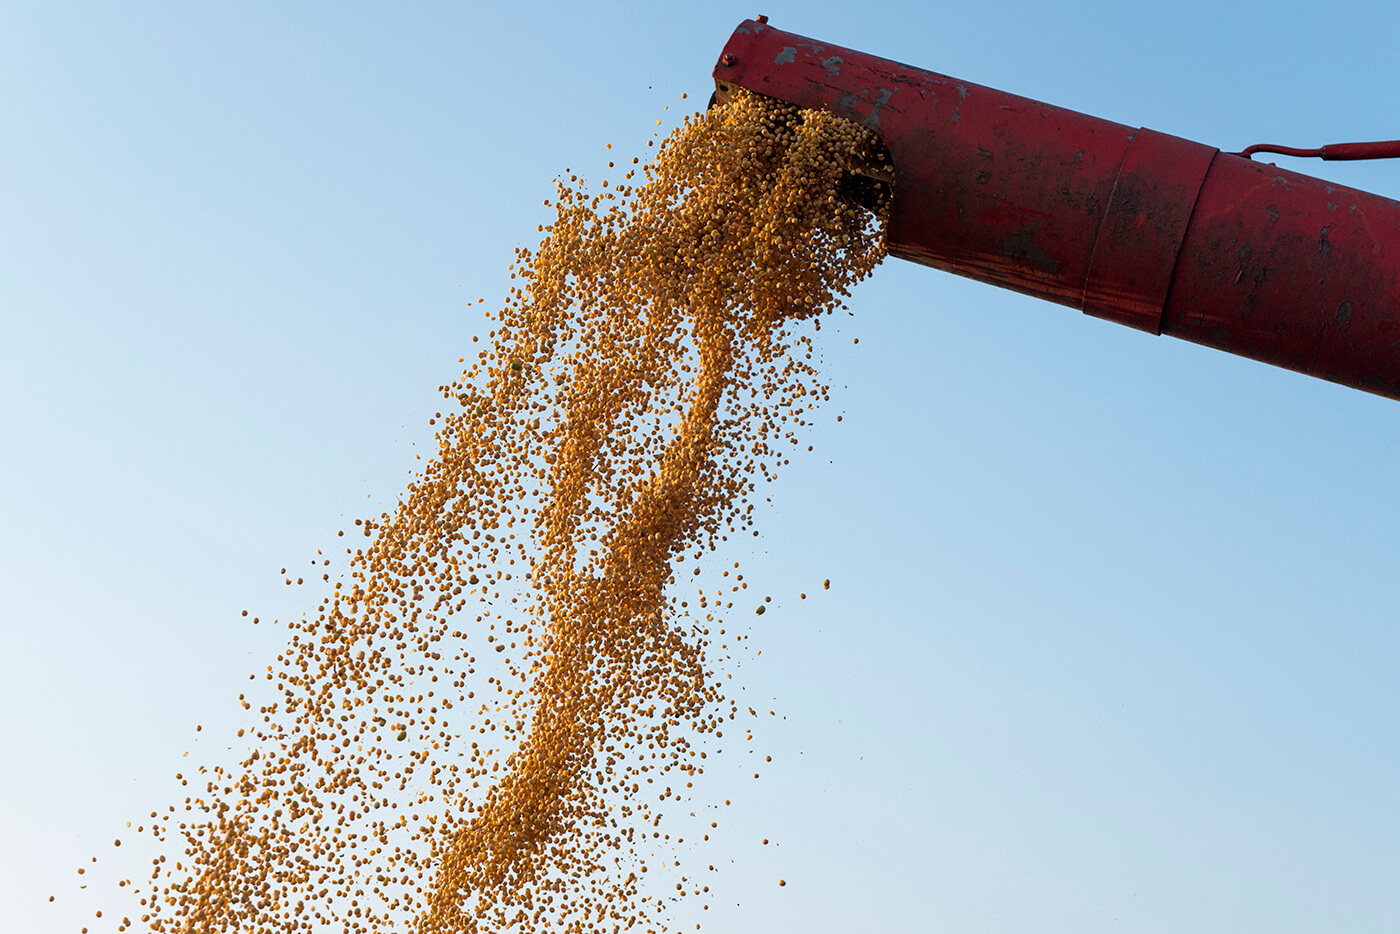 Tecnologia na análise de grãos proporciona maior nível de informação ao produtor